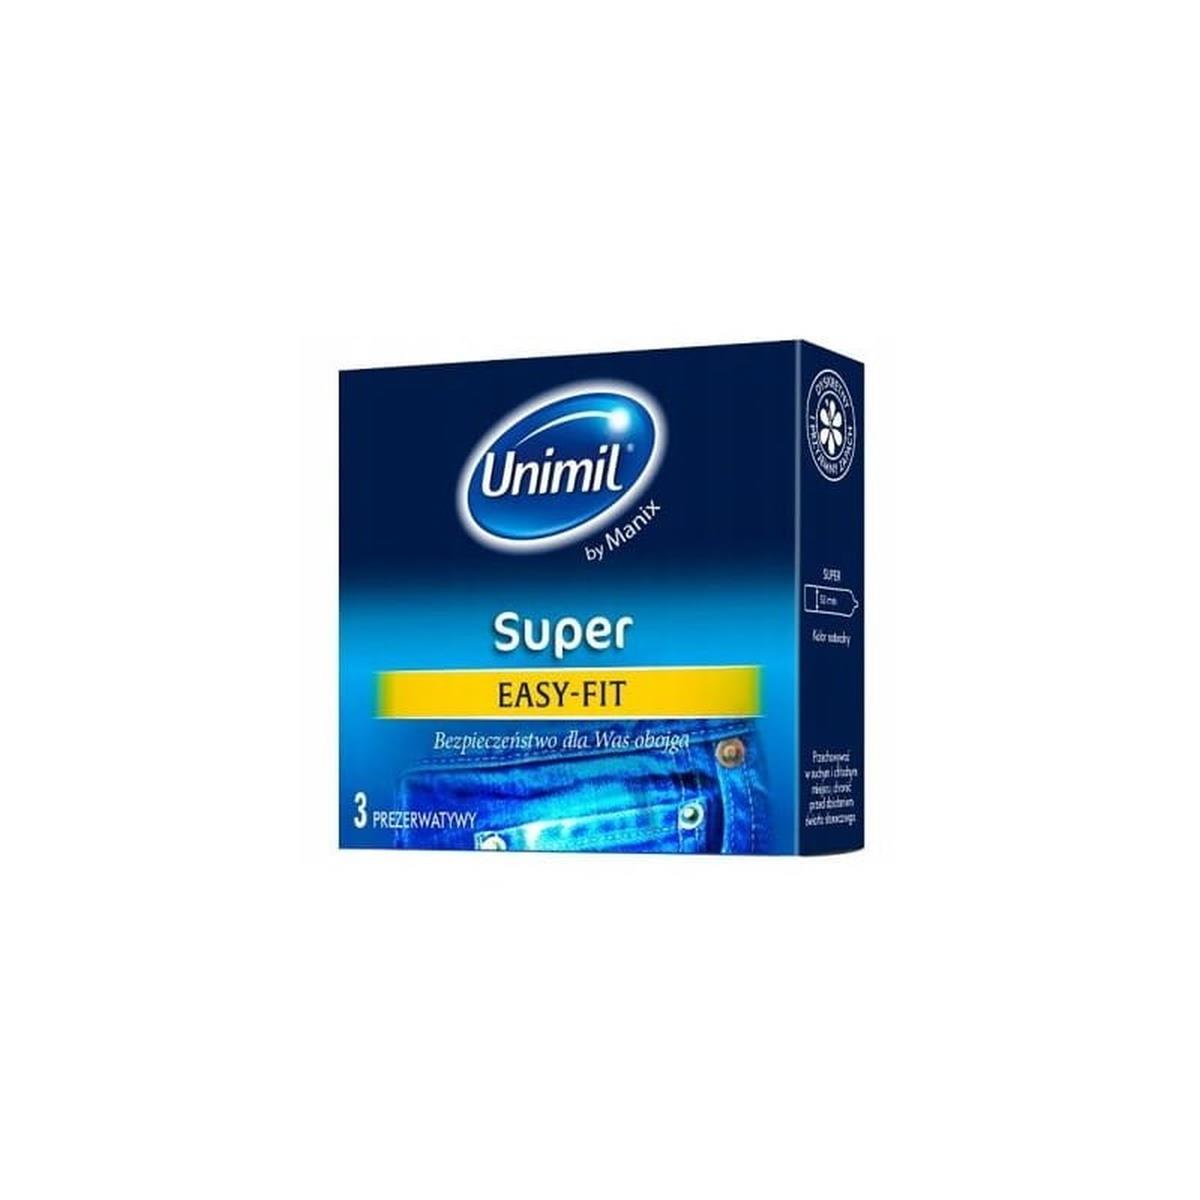 Unimil Super easy fit 3 szt - prezerwatywy Wariant/Rozmiar: 3 szt ▶️▶️ DYSKRETNIE ▶️ GWARANCJA ▶️ PRZESYŁKA 24h ▶️